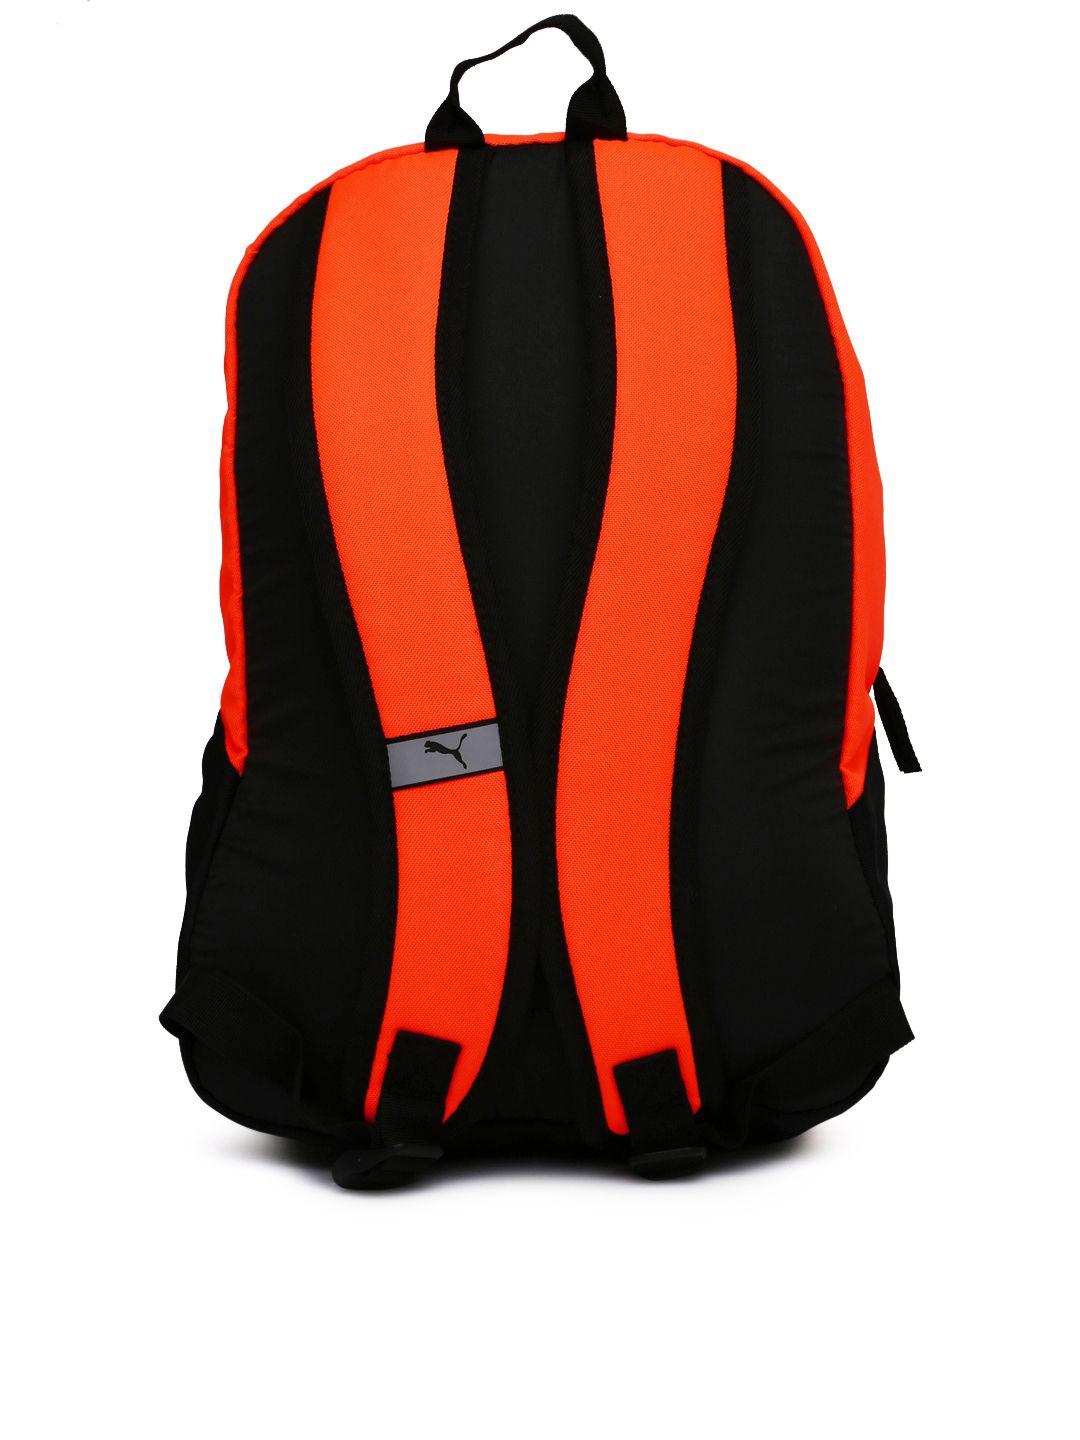 puma orange backpack